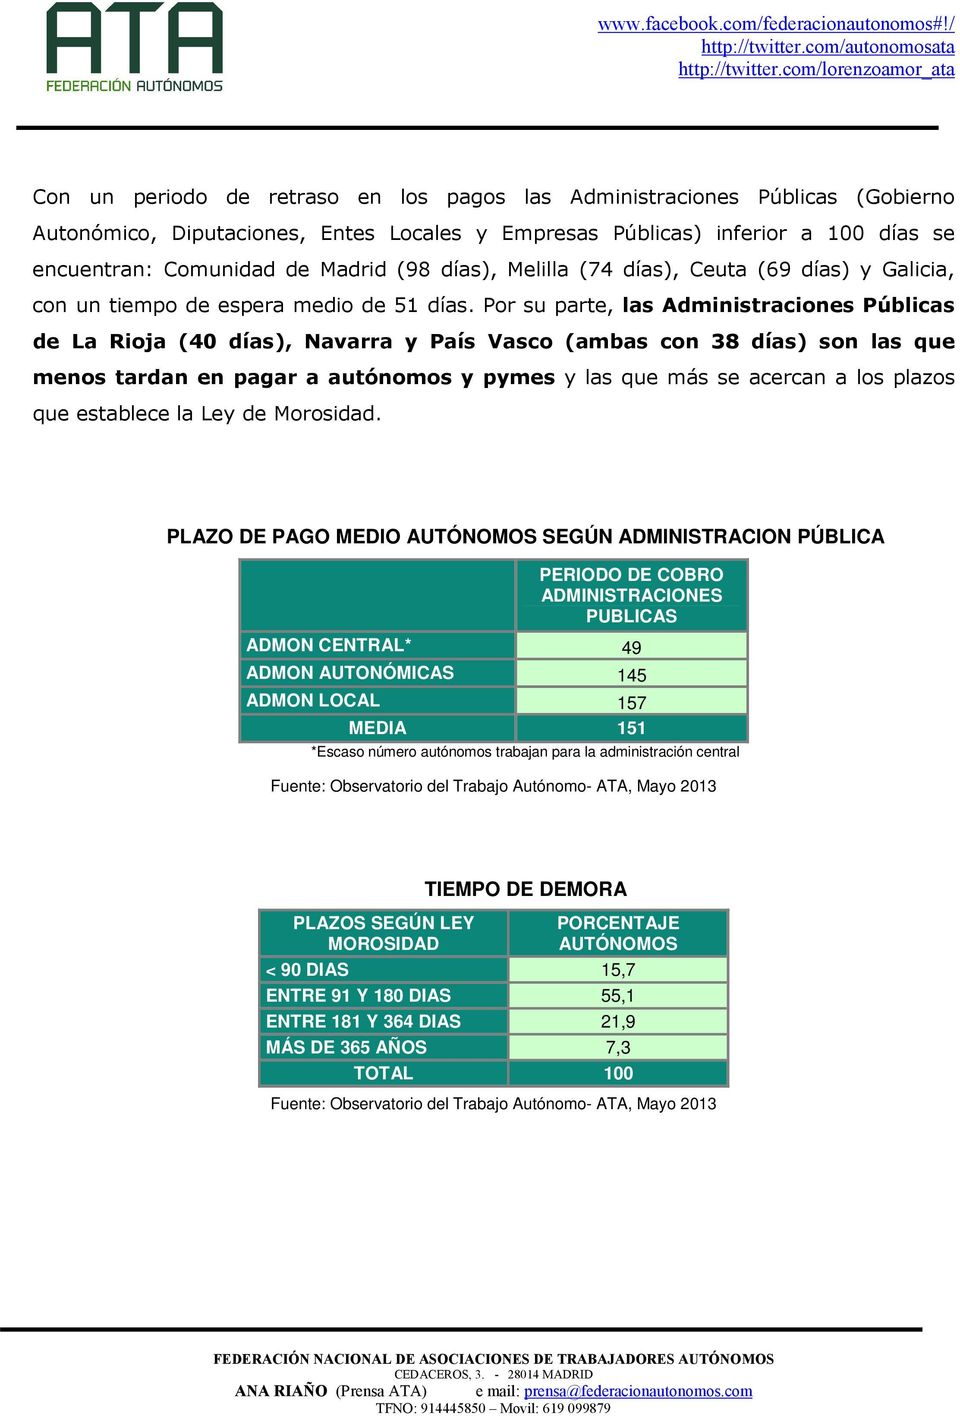 Por su parte, las Administraciones Públicas de La Rioja (40 días), Navarra y País Vasco (ambas con 38 días) son las que menos tardan en pagar a autónomos y pymes y las que más se acercan a los plazos